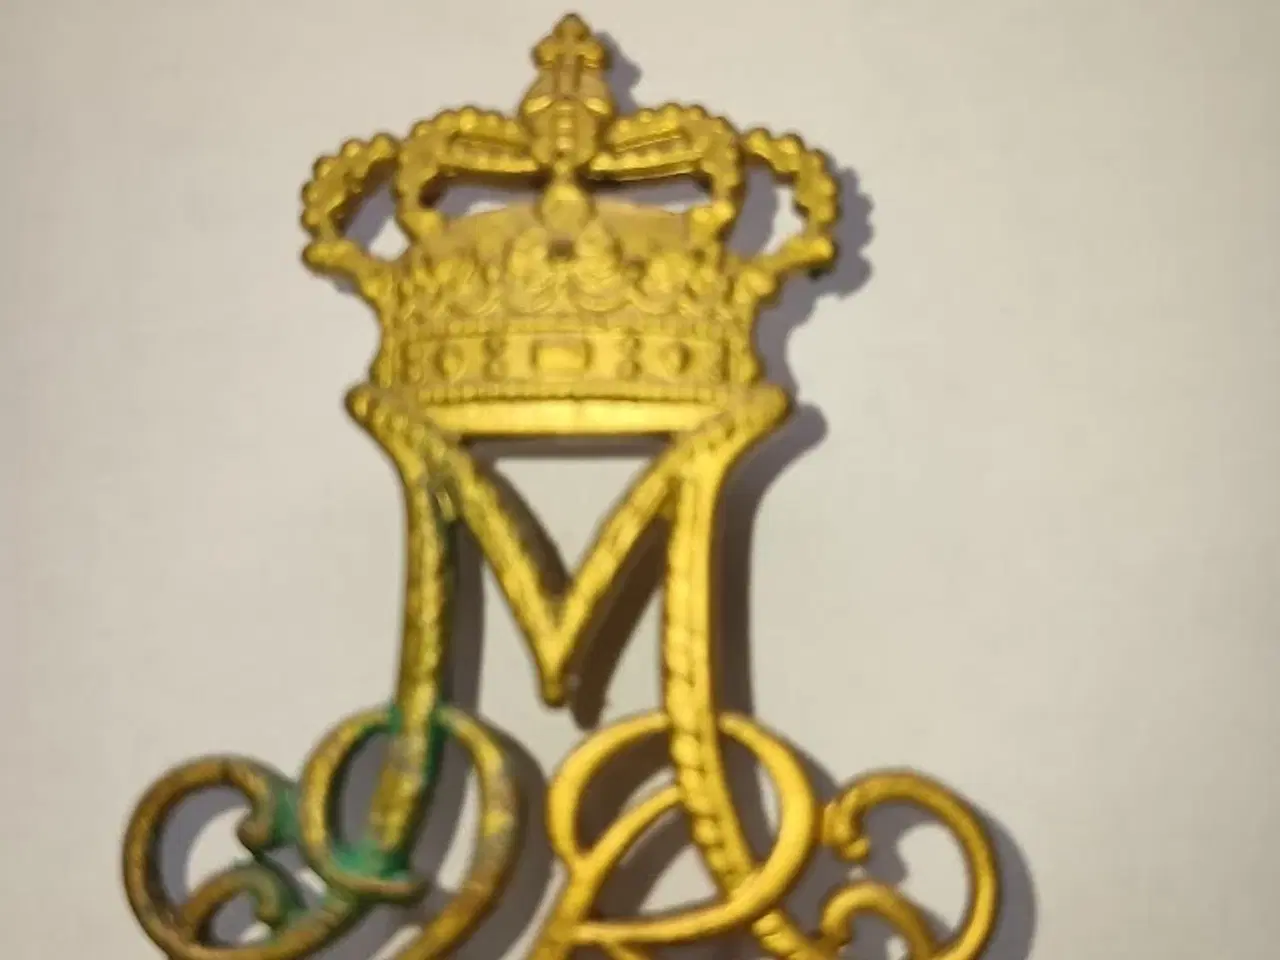 Billede 1 - Emblem fra Livgarden og garderhusarerne